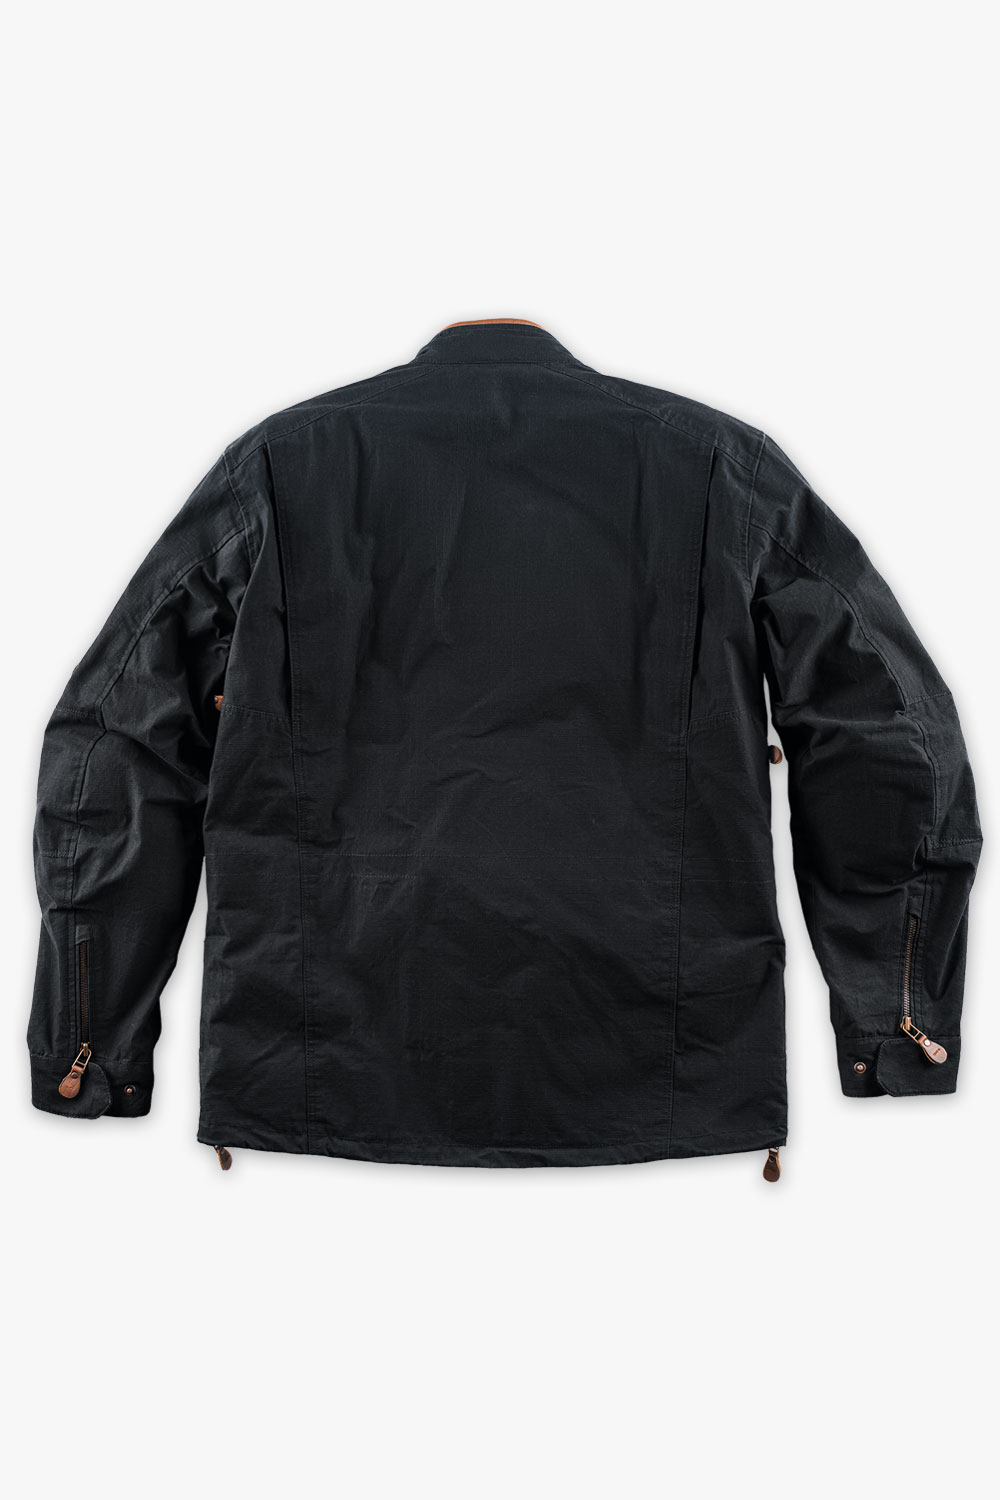 mens moto65 suit black jacket back